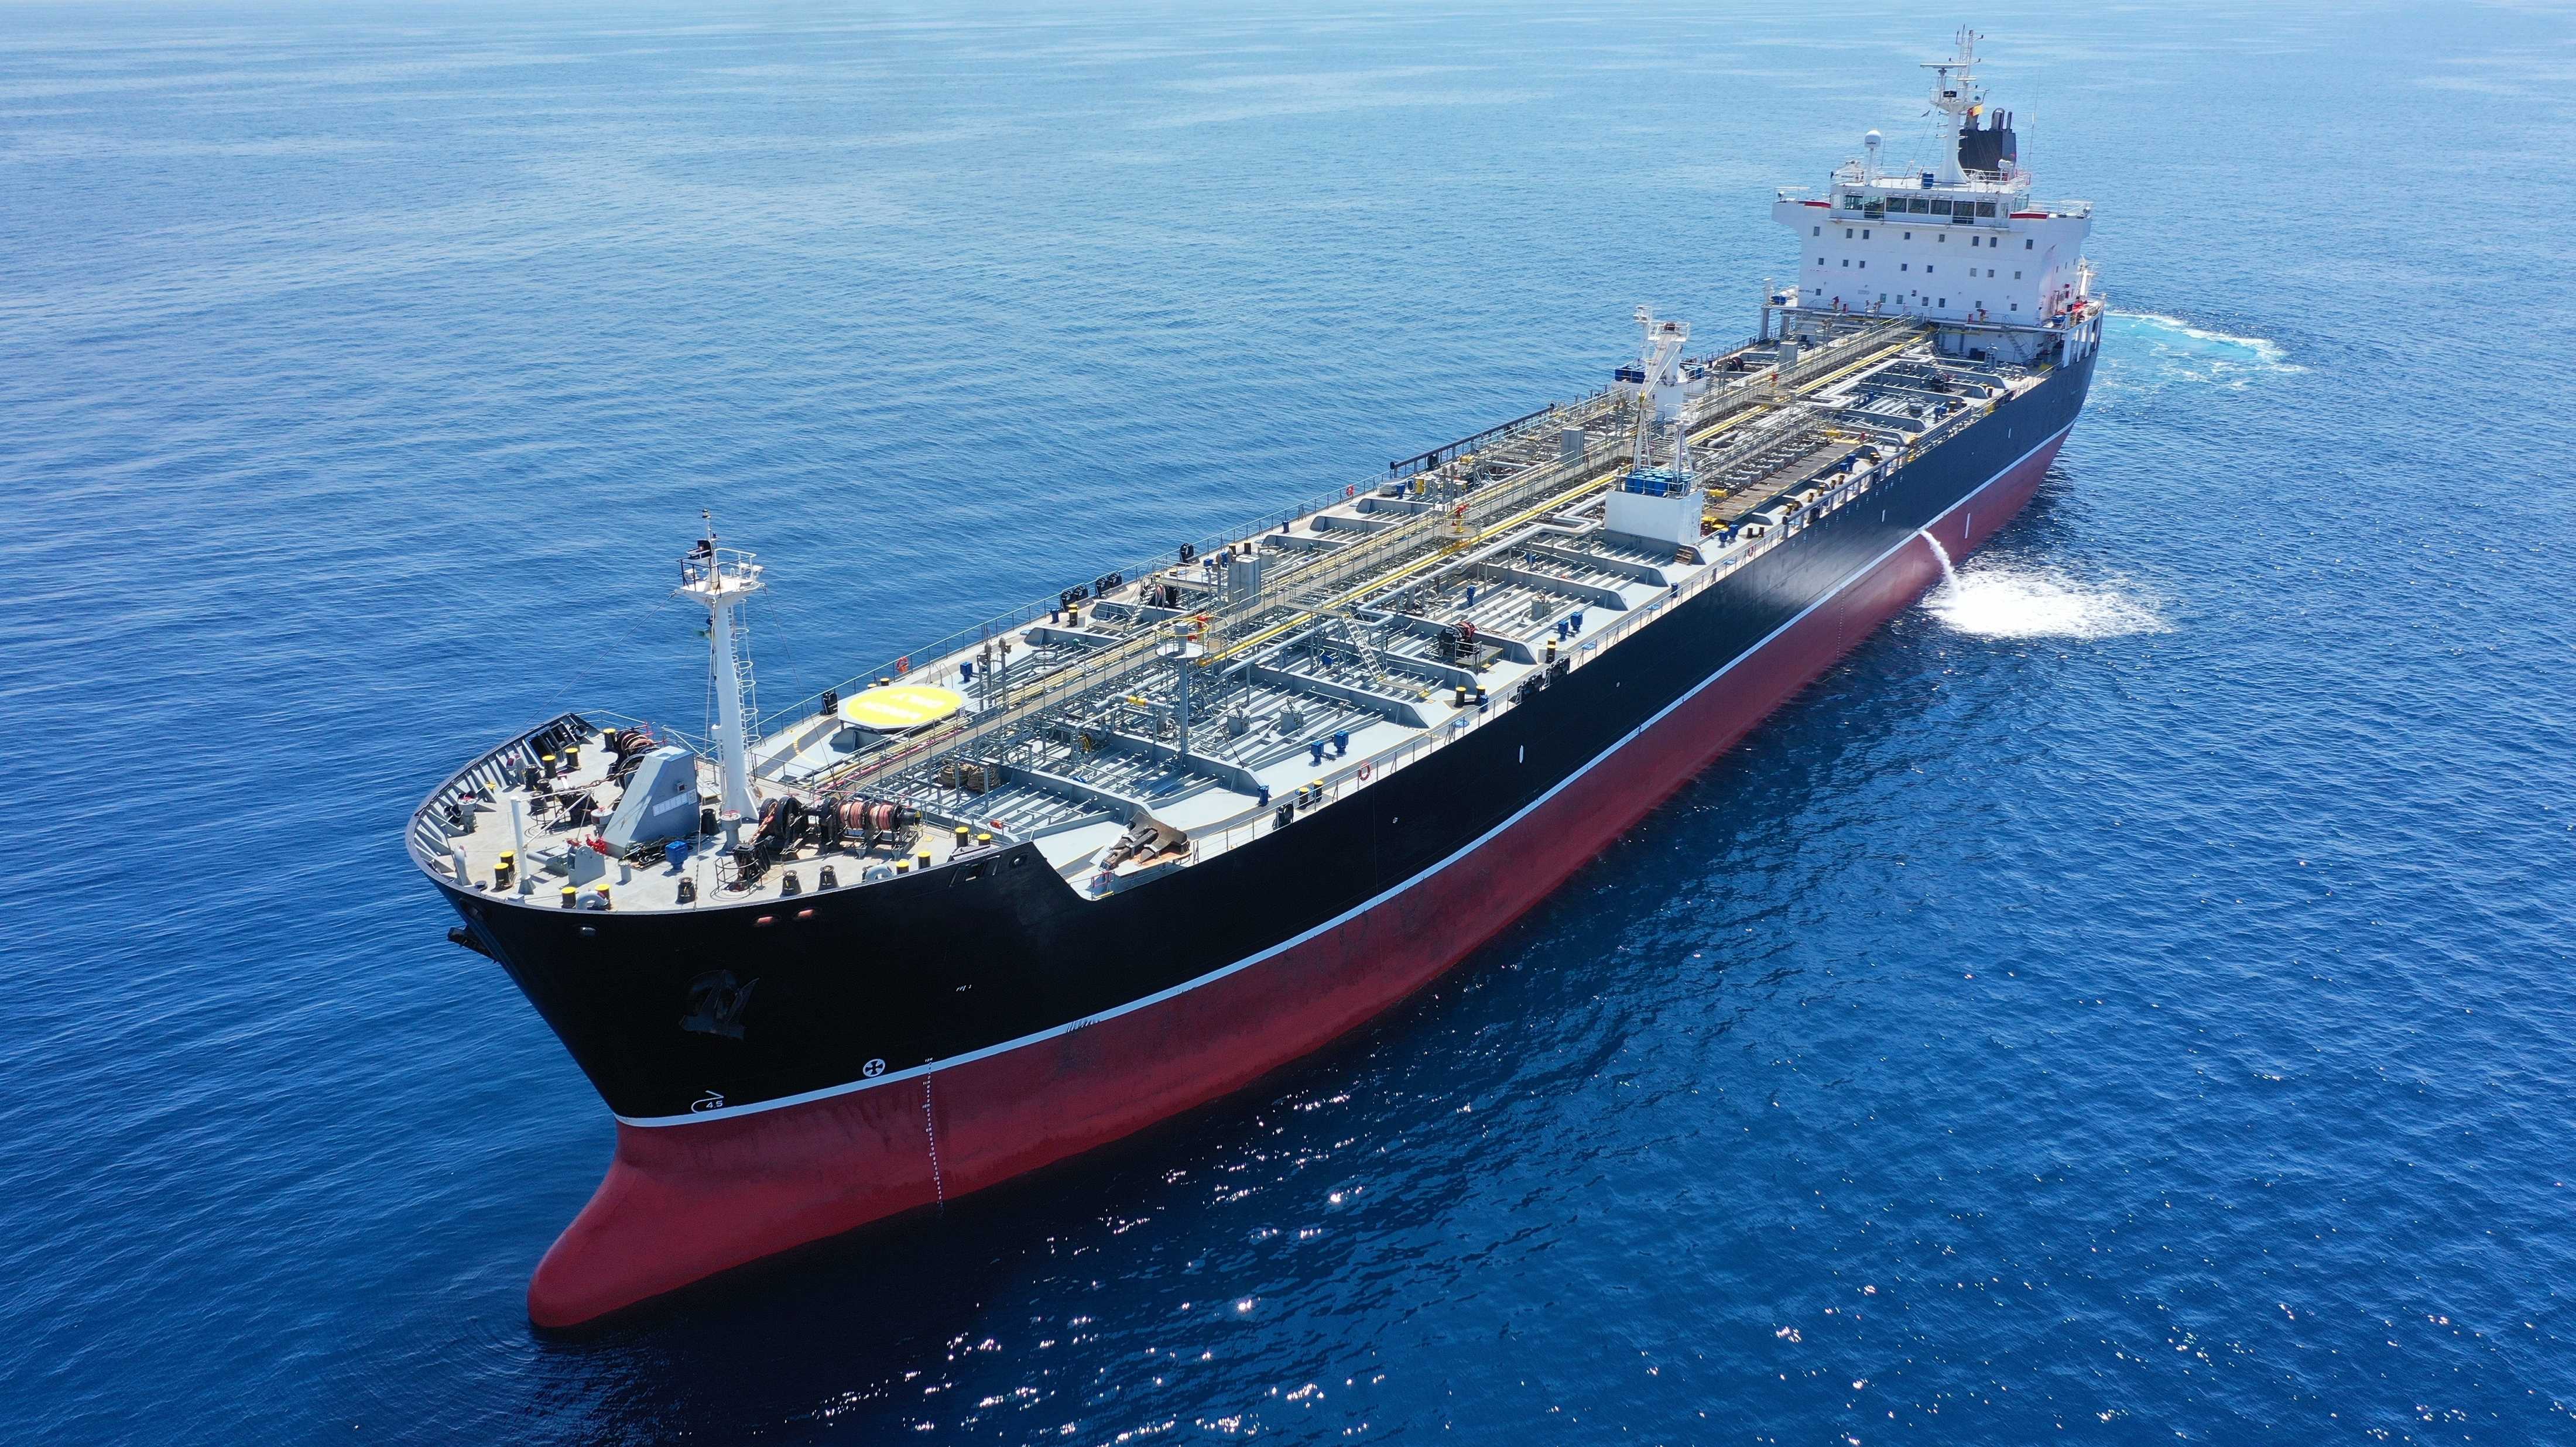 Öltanker ankert auf offenem Meer - Russlands Ölexporte trotzen Sanktionen